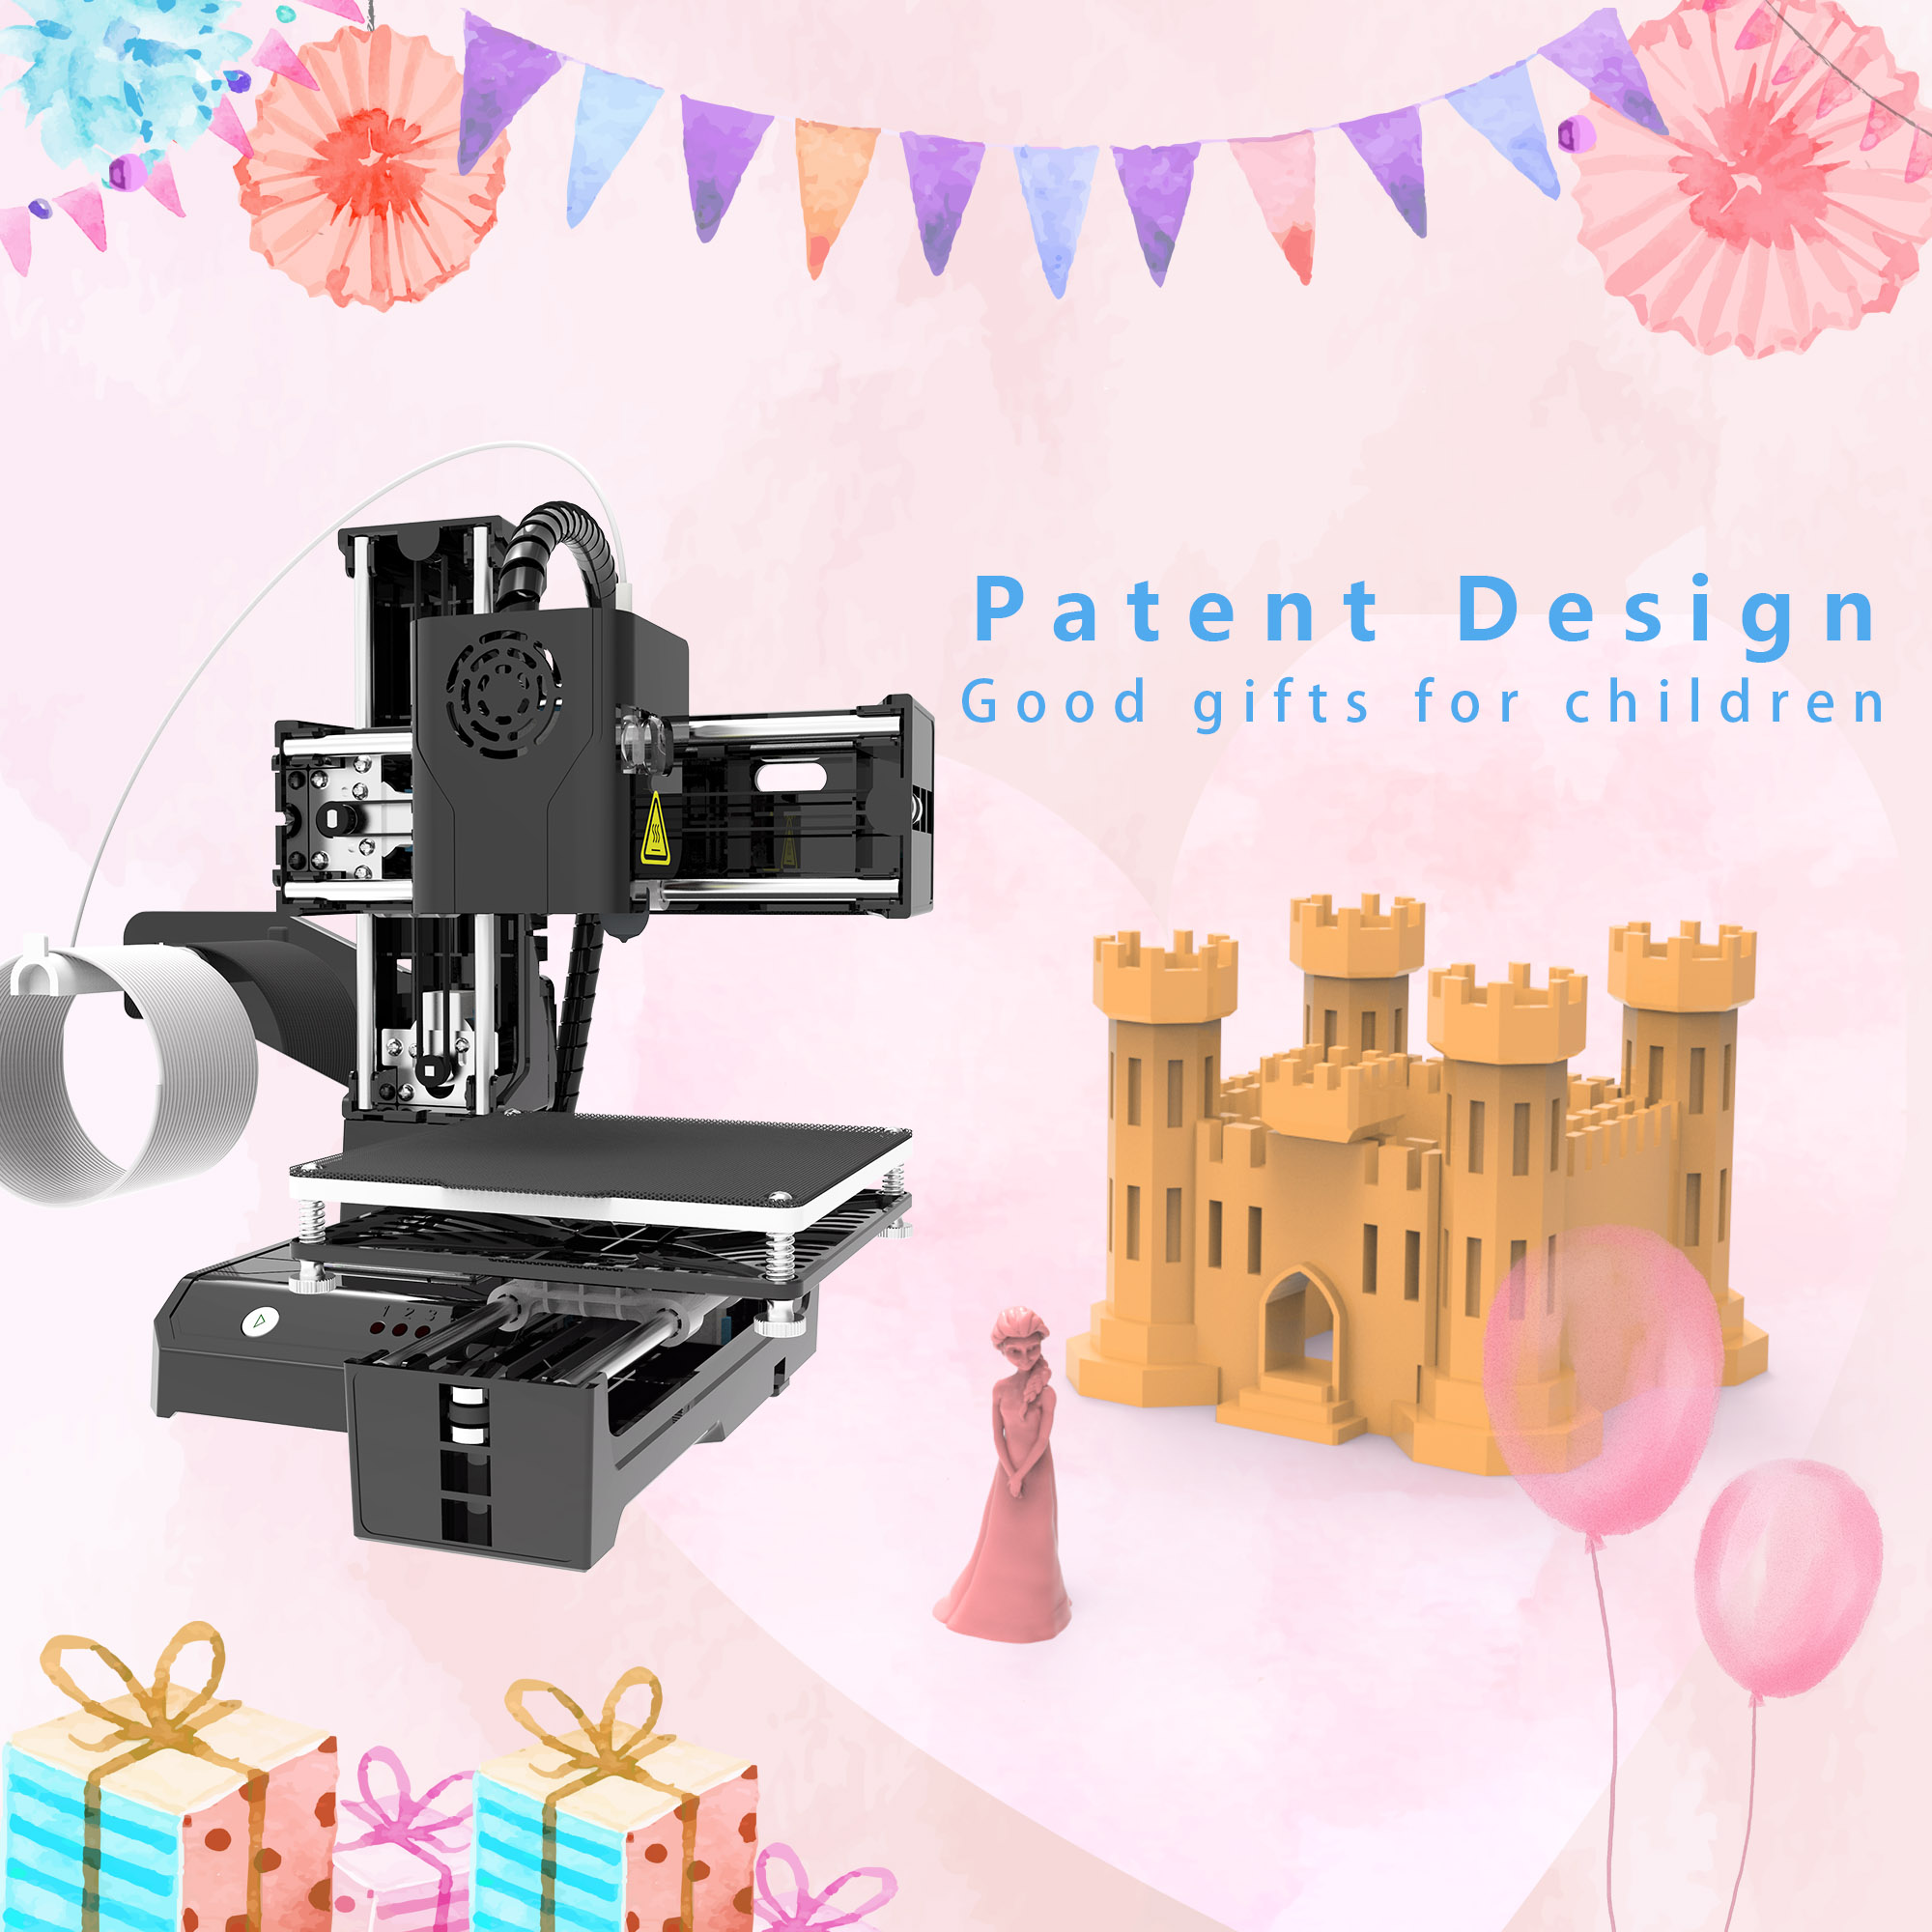 EasyThreed K9 Mini stampante 3D facile da usare Entry Level Toy Gift stampante 3D FDM TPU PLA filamento 1.75mm nero